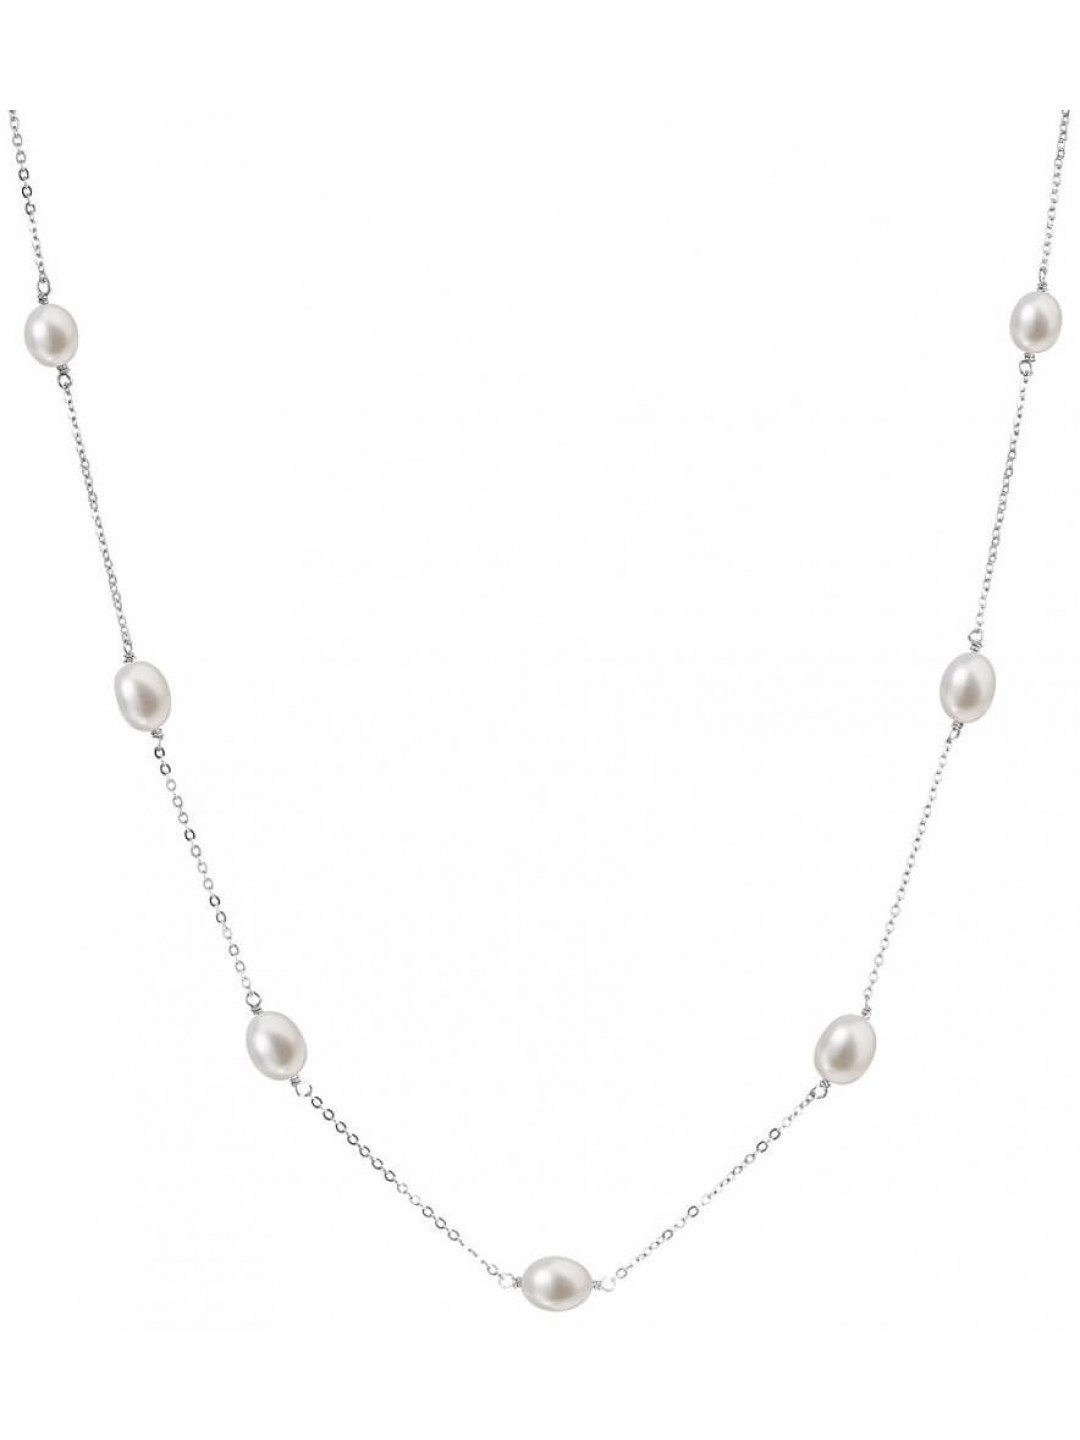 Evolution Group Stříbrný náhrdelník s 7 pravými perlami Pavona 22016 1